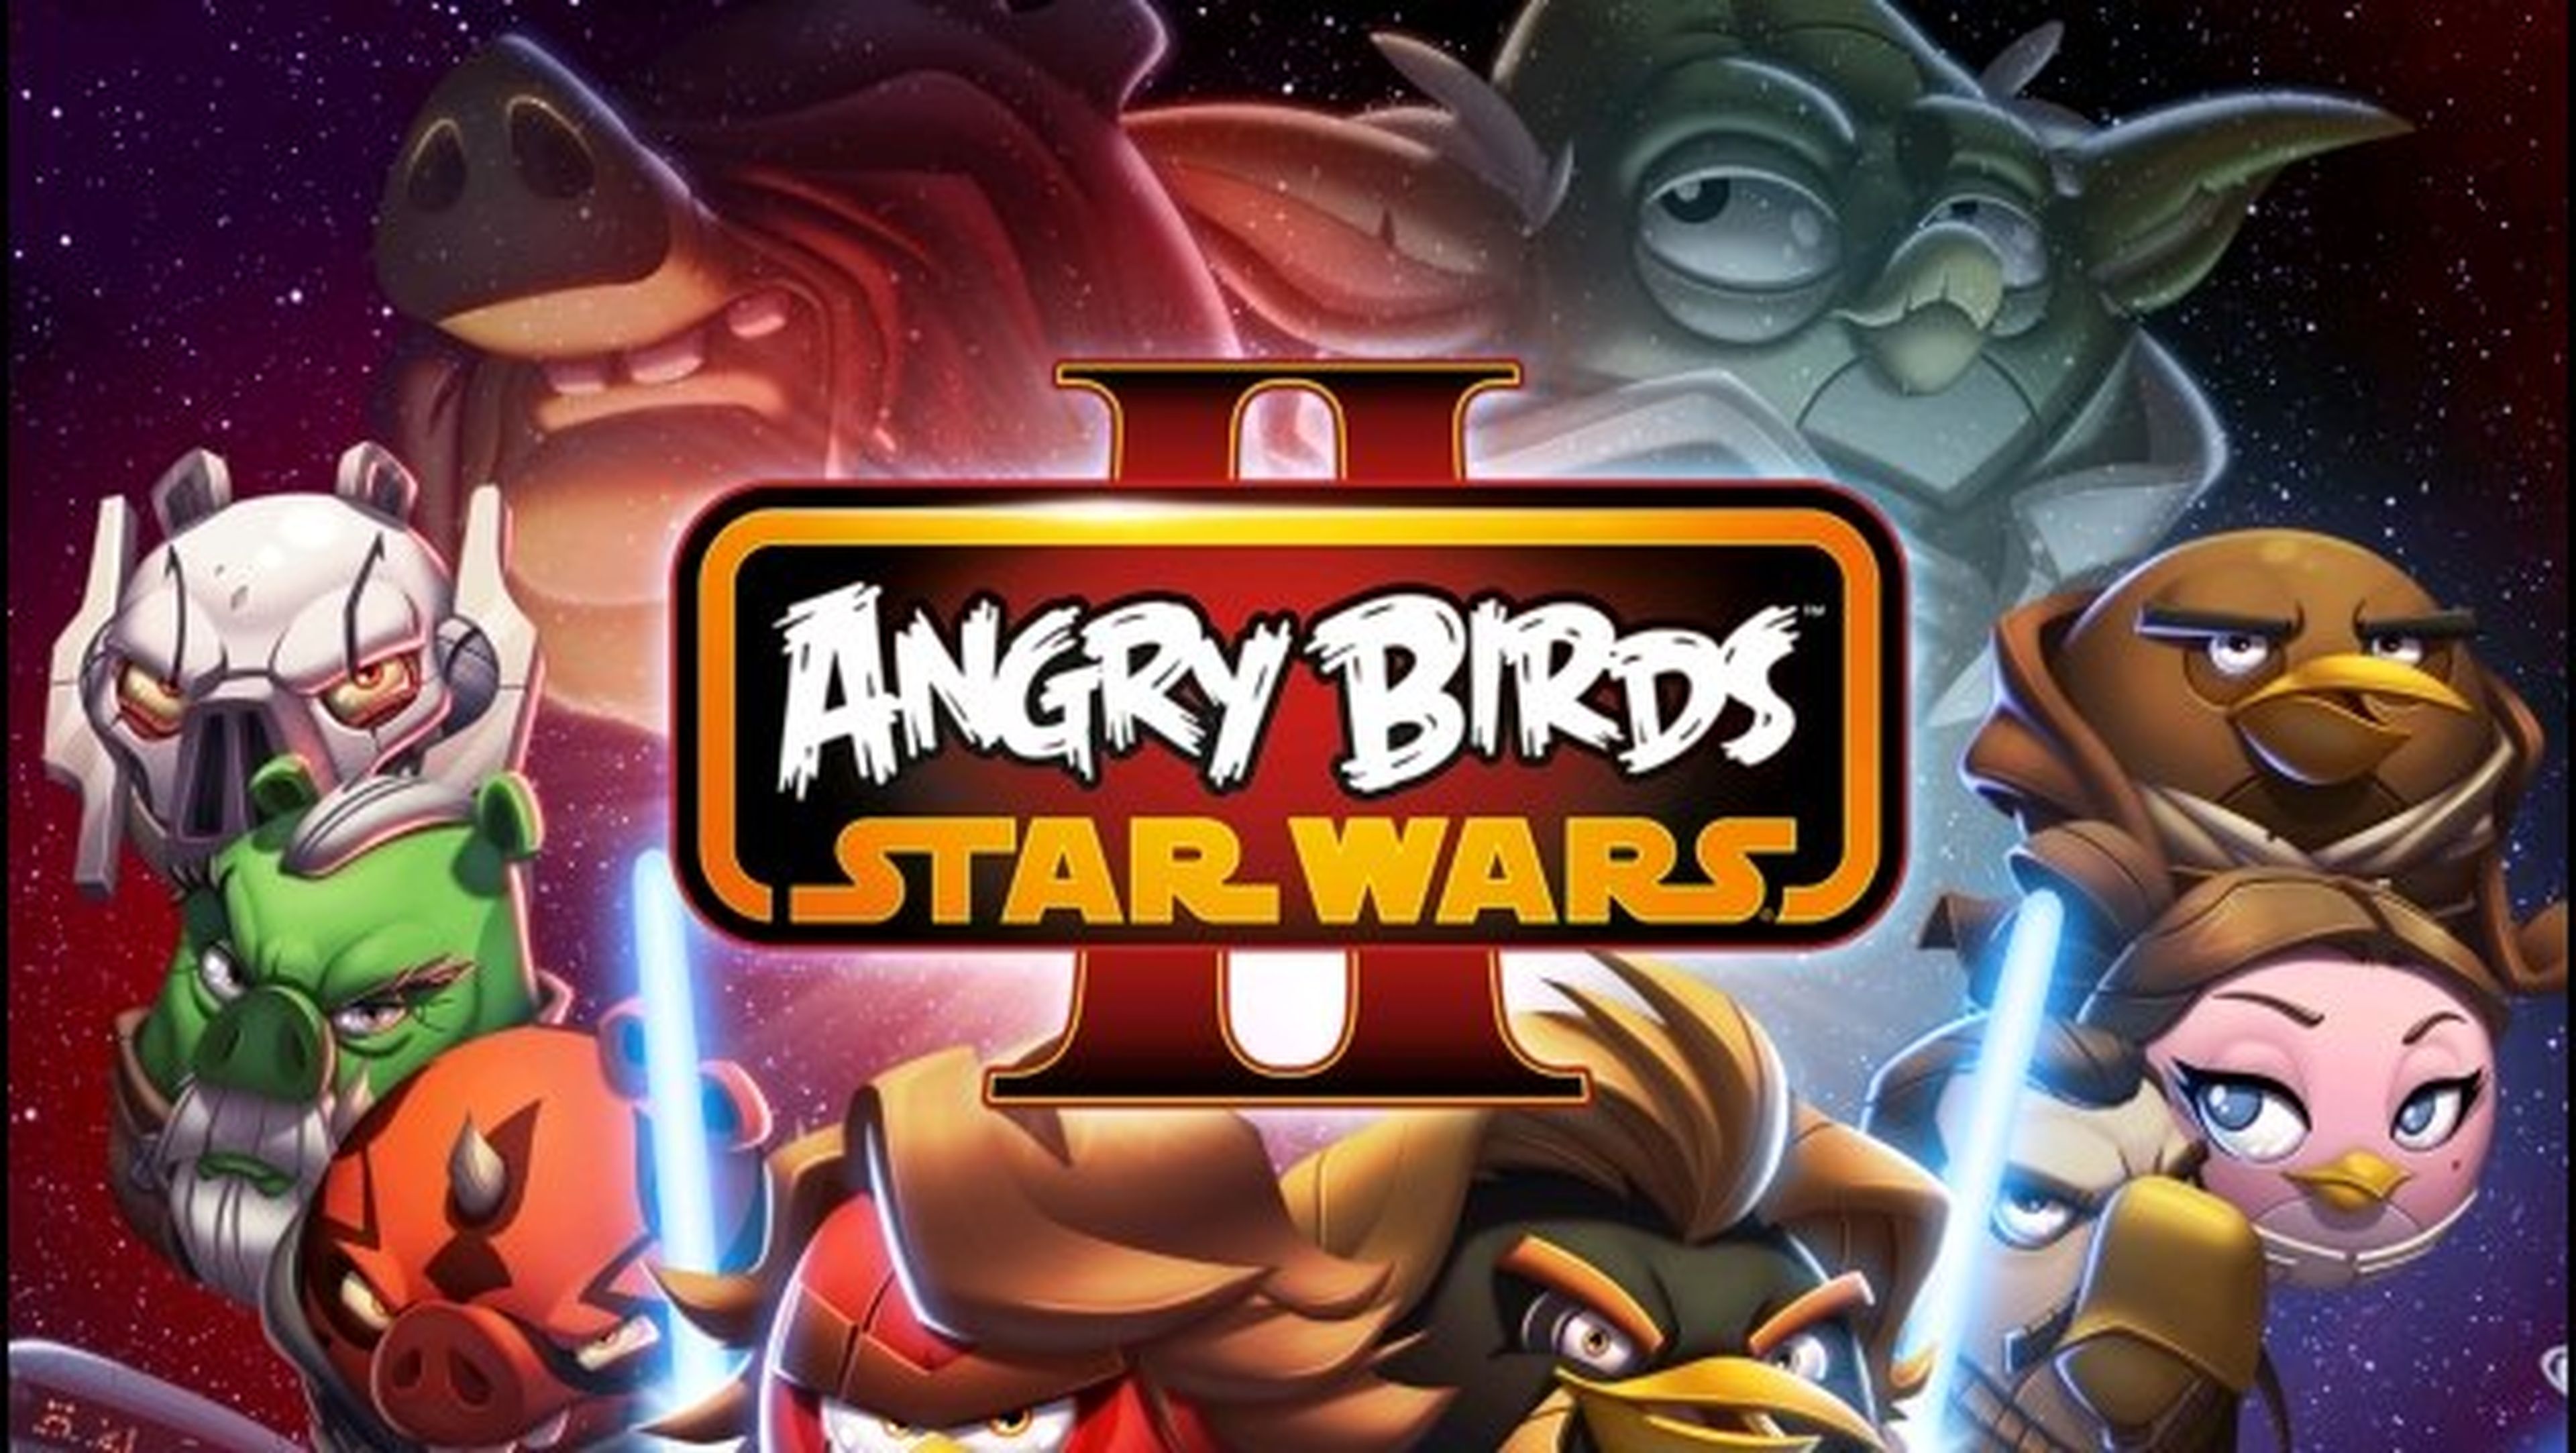 Descarga Angry Birds Star Wars II gratis, sólo hoy